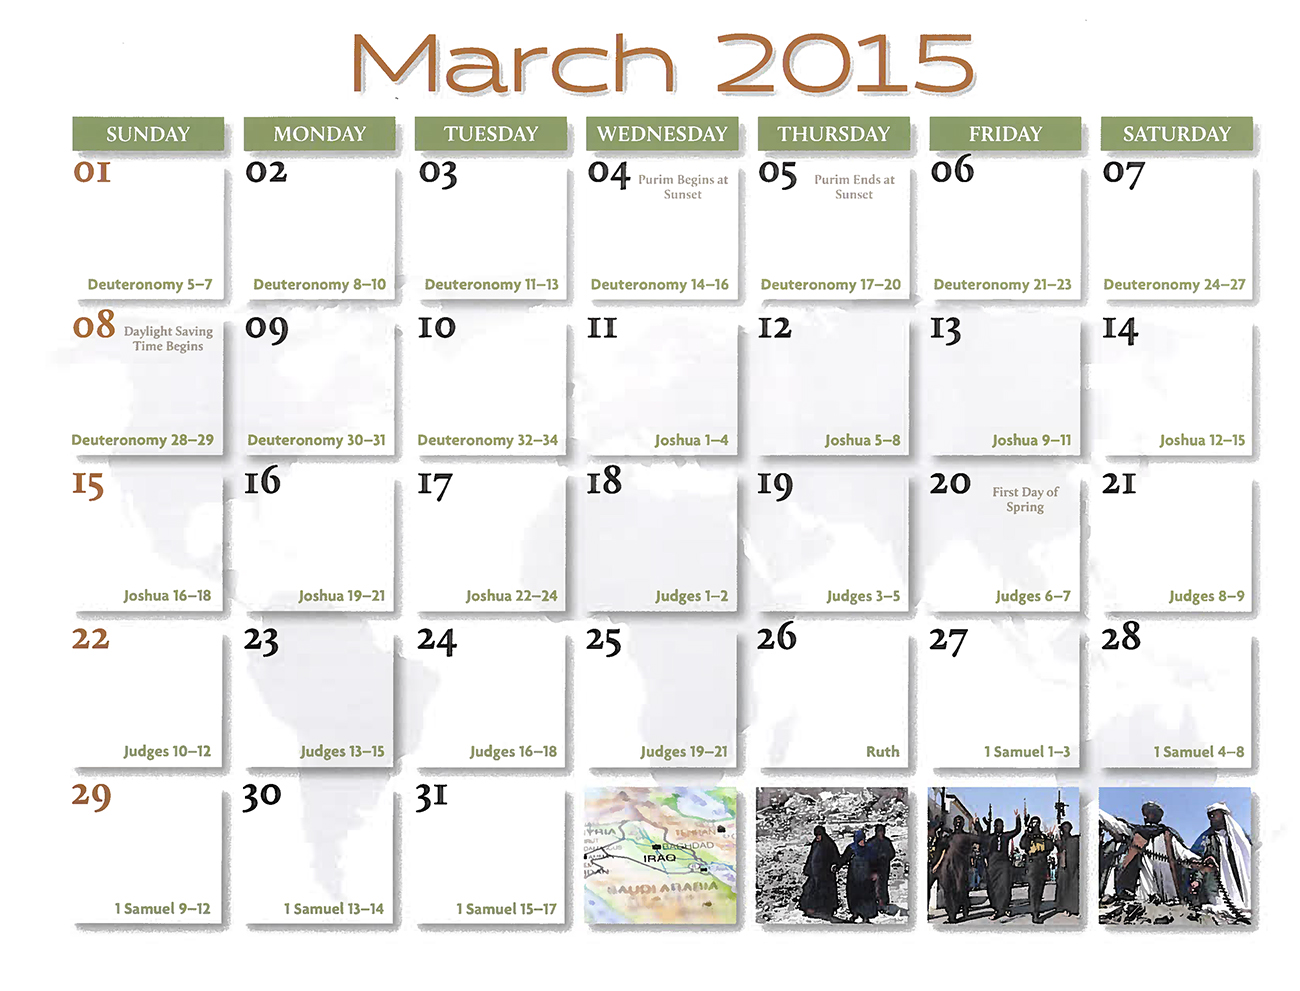 2015 Prophecy Calendar: March - Calenmdar